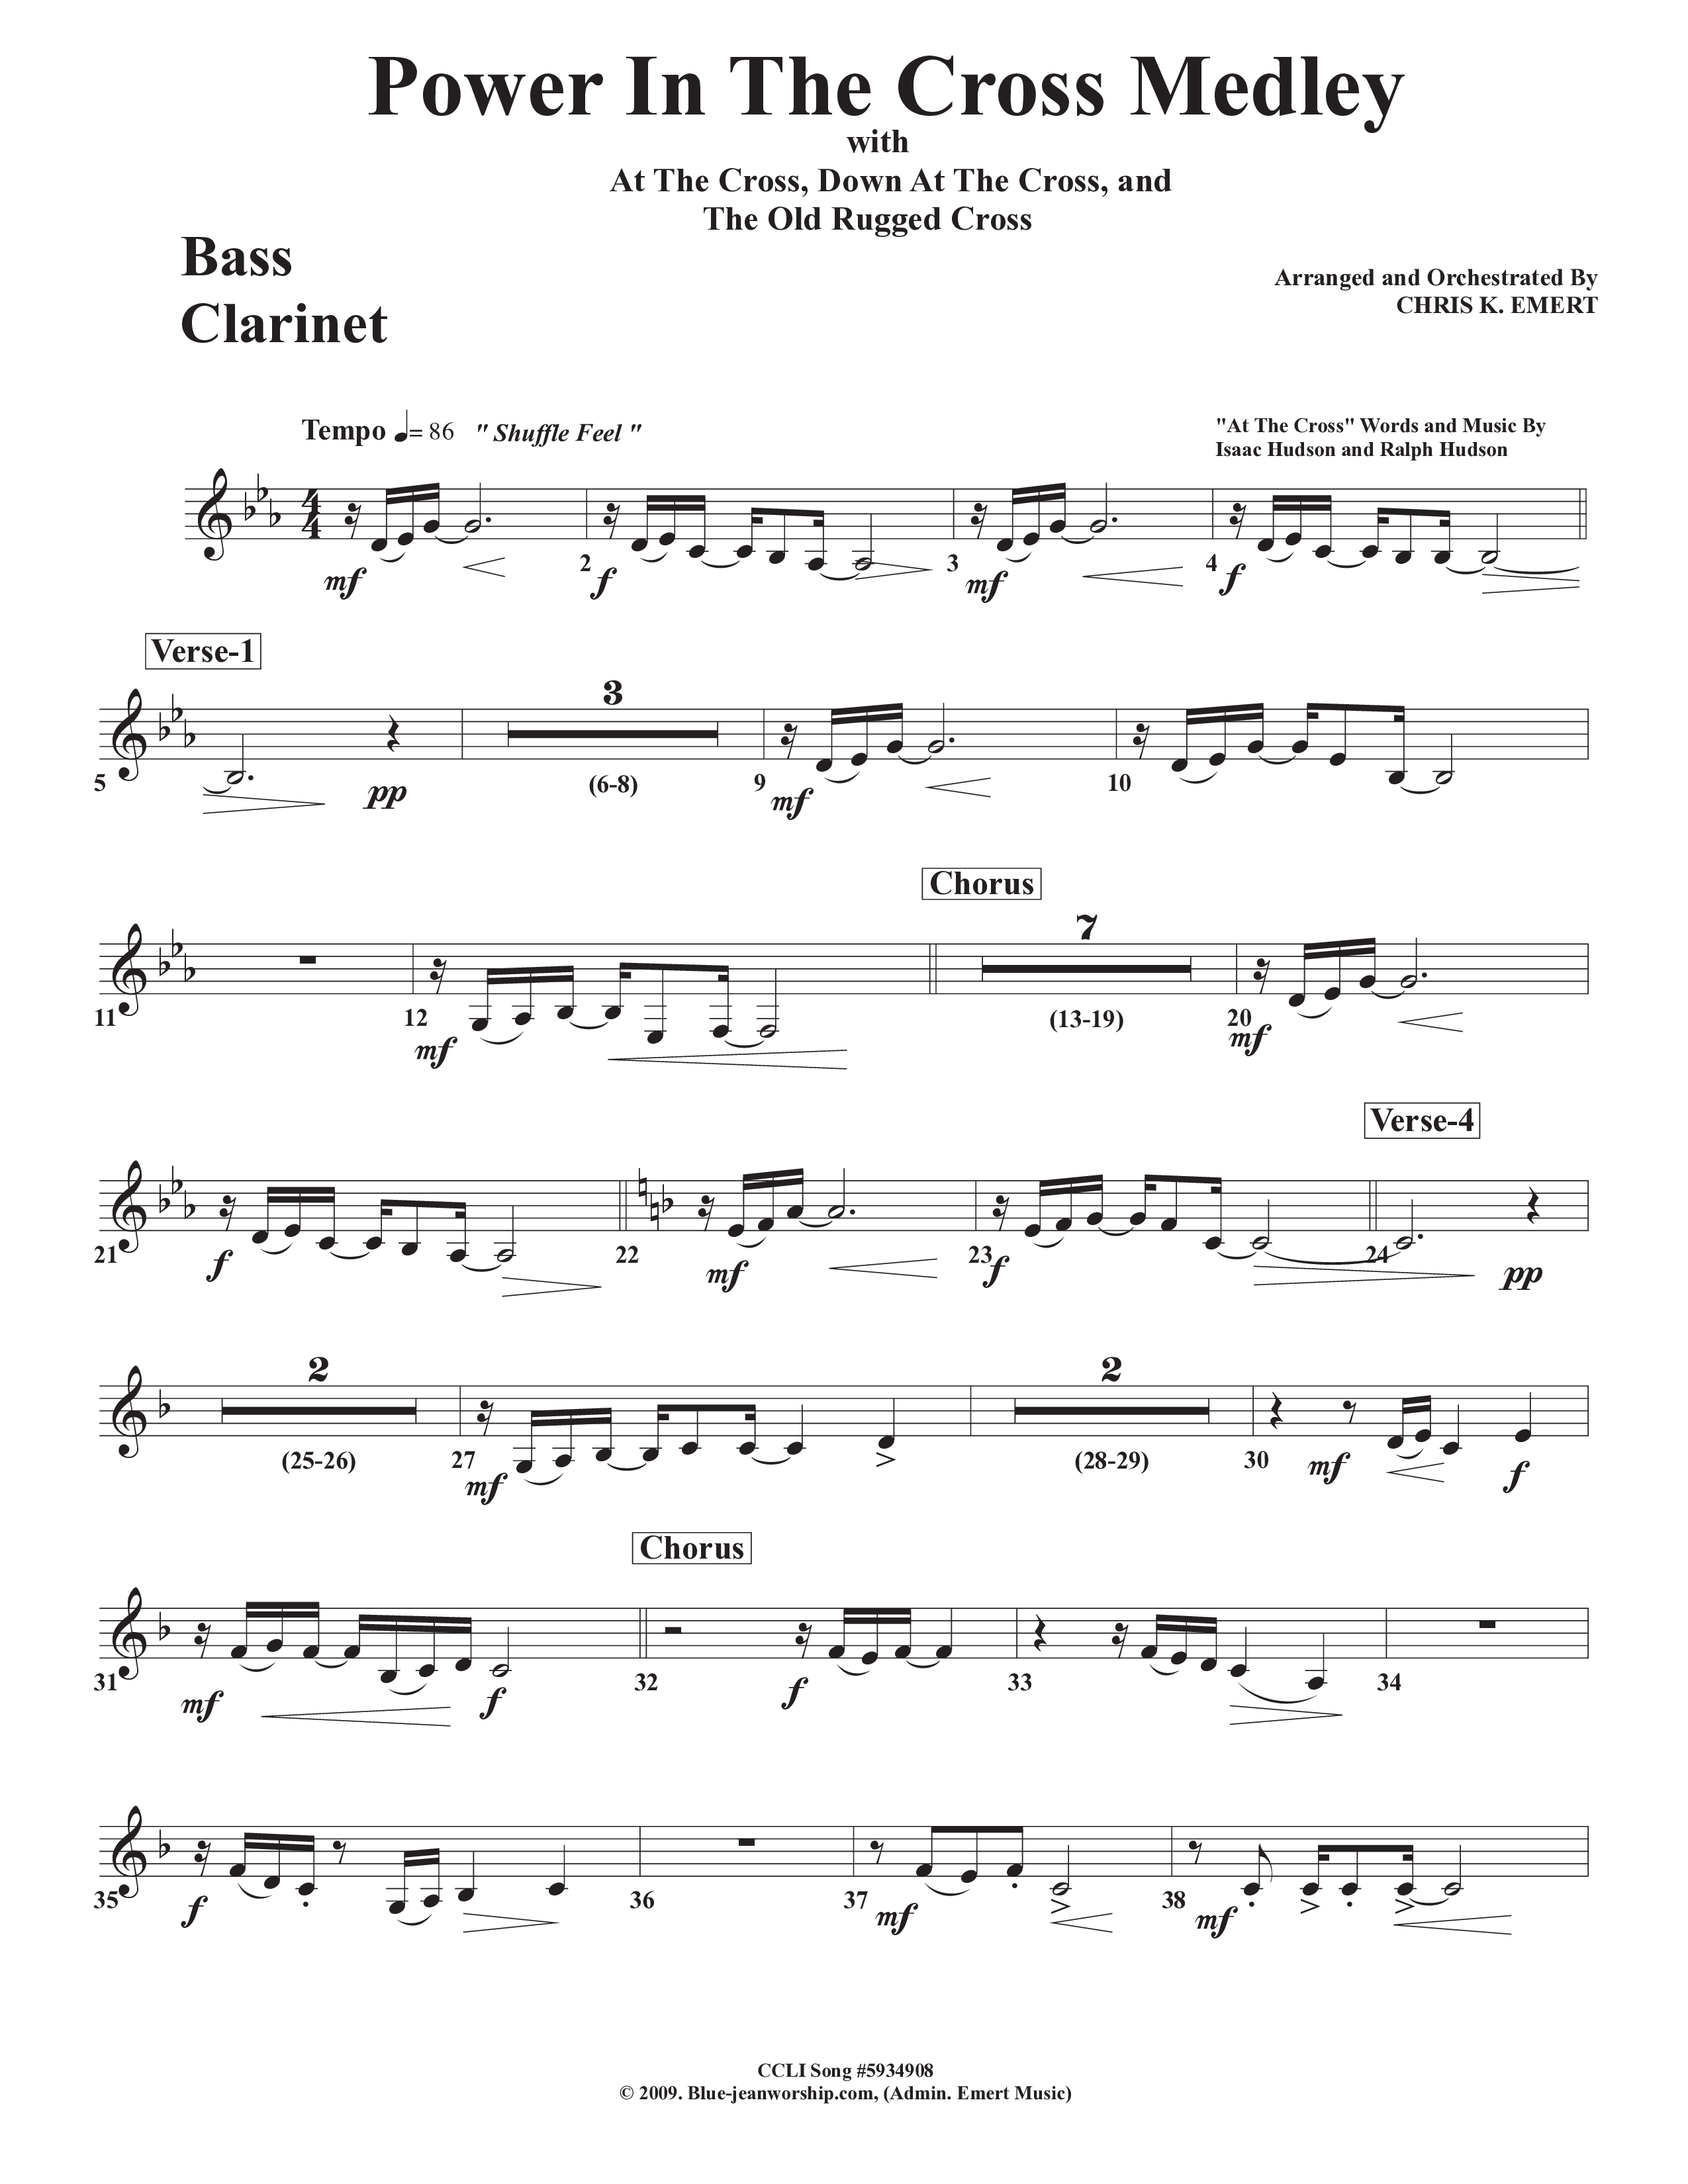 Power In The Cross Medley Bass Clarinet (Chris Emert)